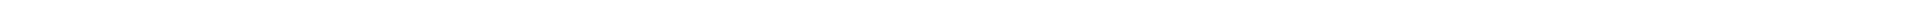 HANDLEBAR-MOUNTED CIGARETTE LIGHTER SOCKET